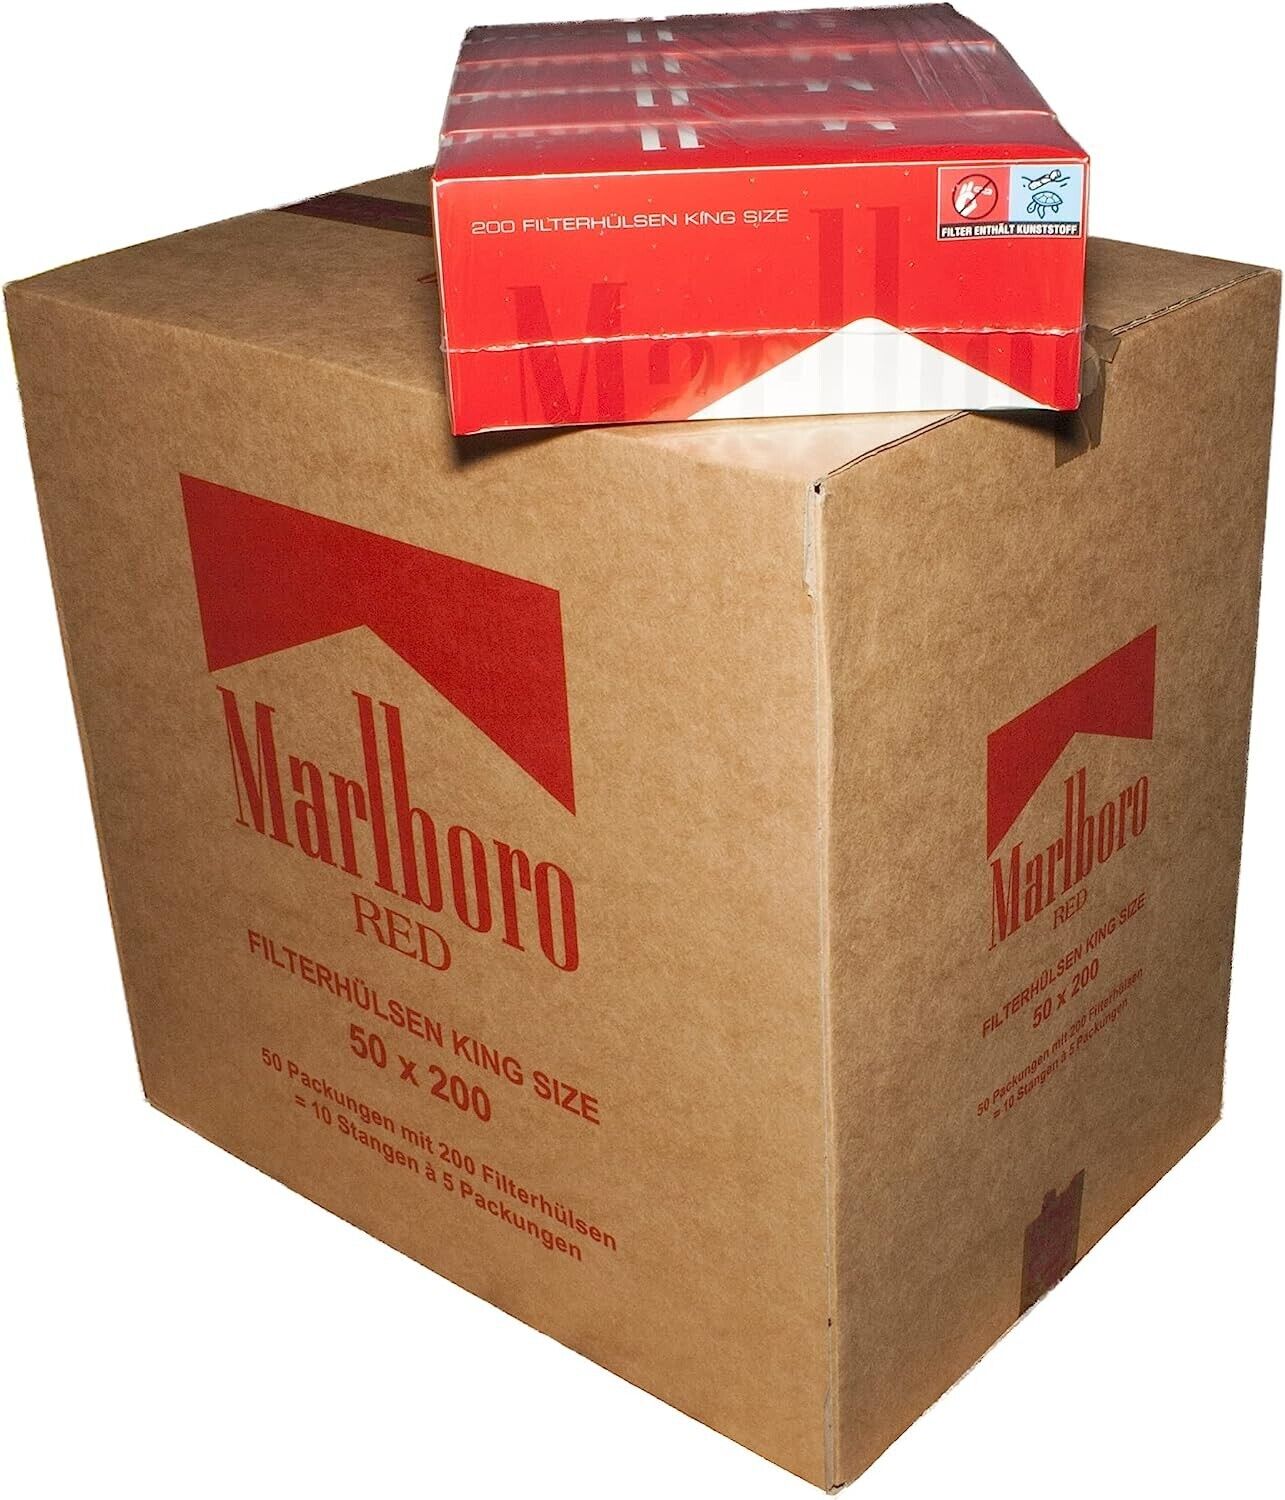 50 BOXES Marlboro Red King size cigarette tubes 50 x 200 pcs.